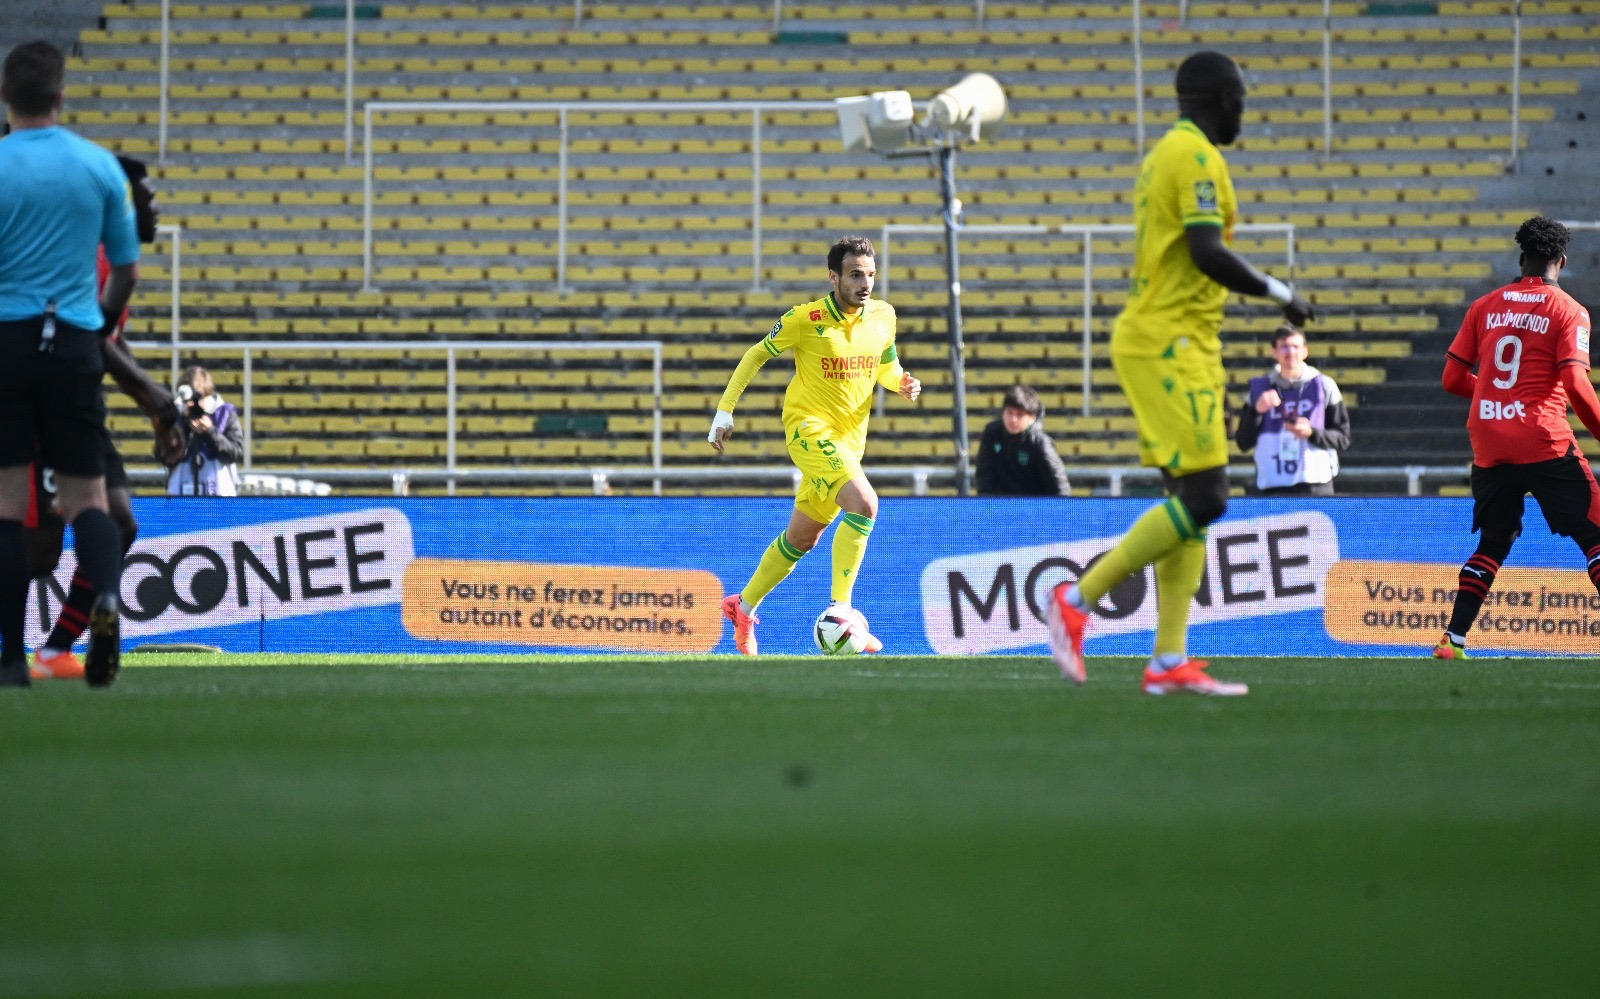 Écran avec la marque Moonee, derrière les joueurs du FC Nantes qui jouent sur le terrain